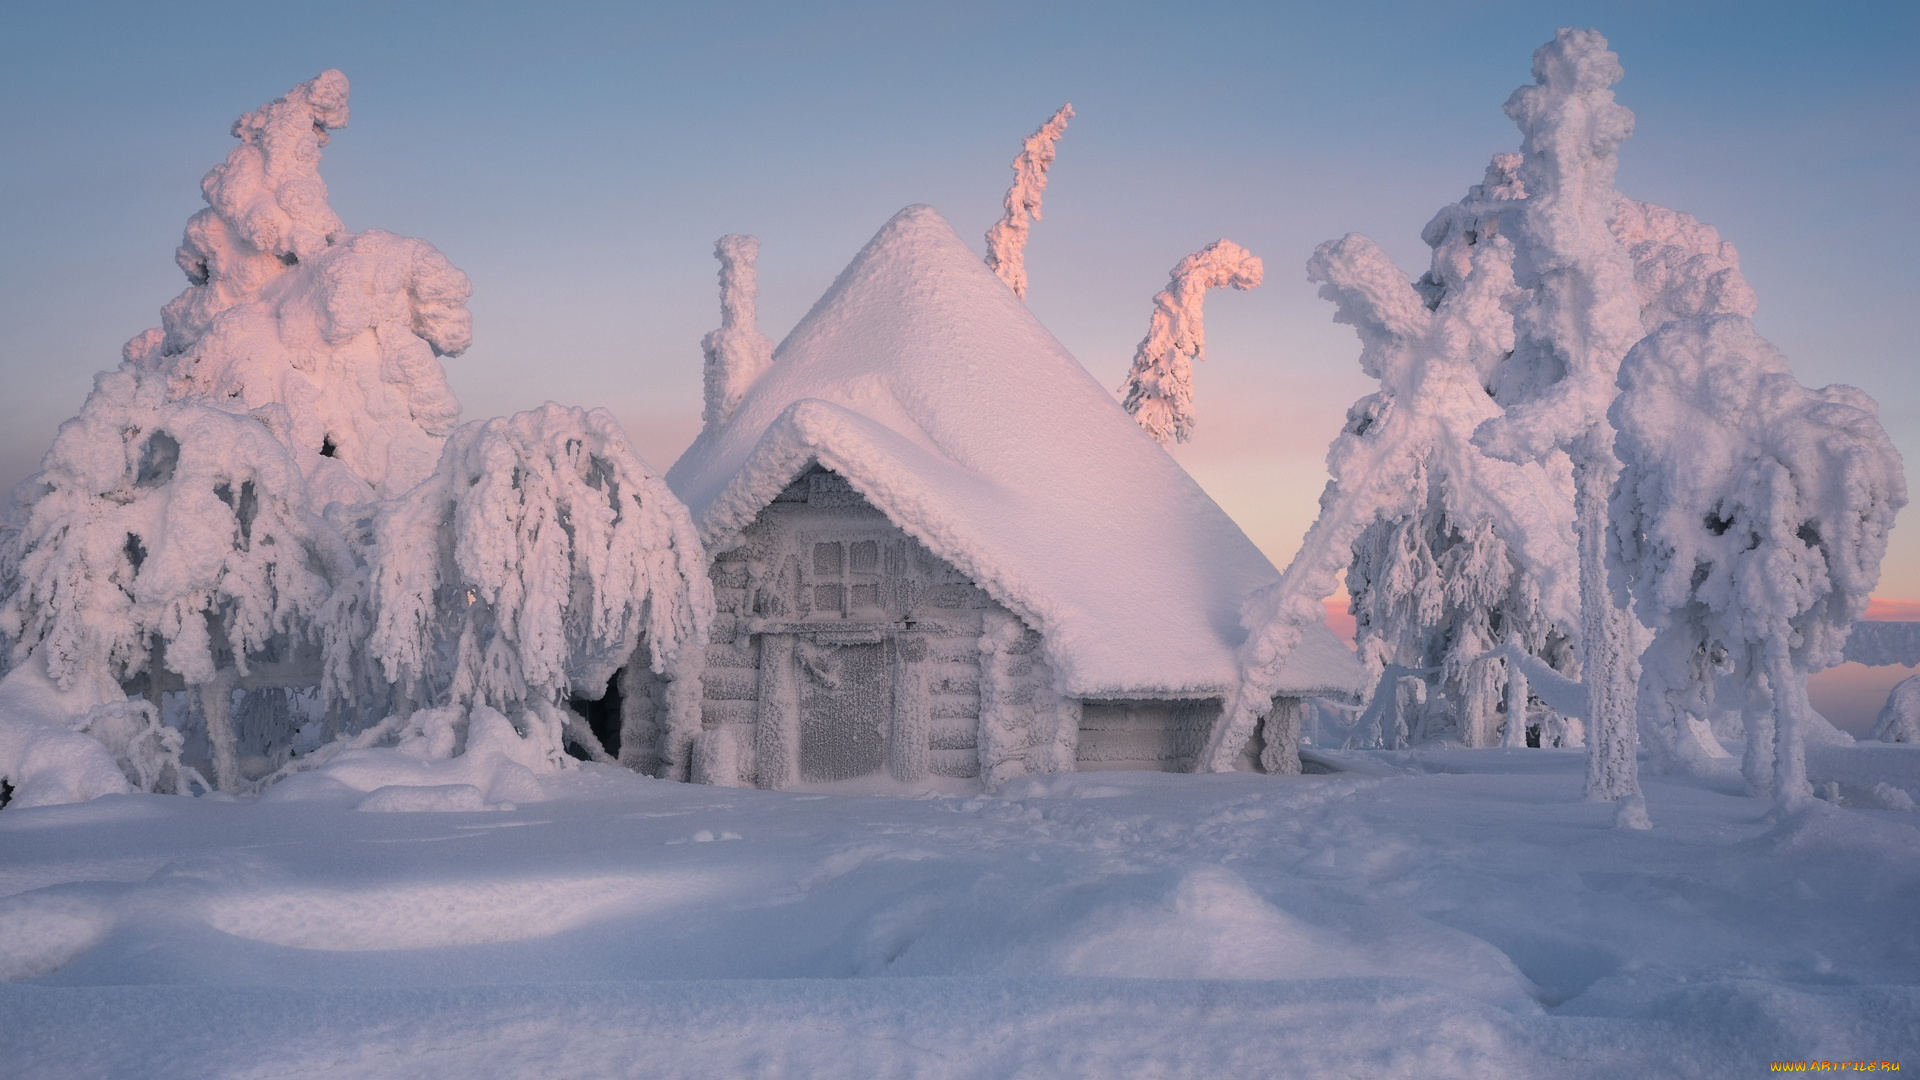 природа, зима, снег, деревья, избушка, сугробы, домик, финляндия, лапландия